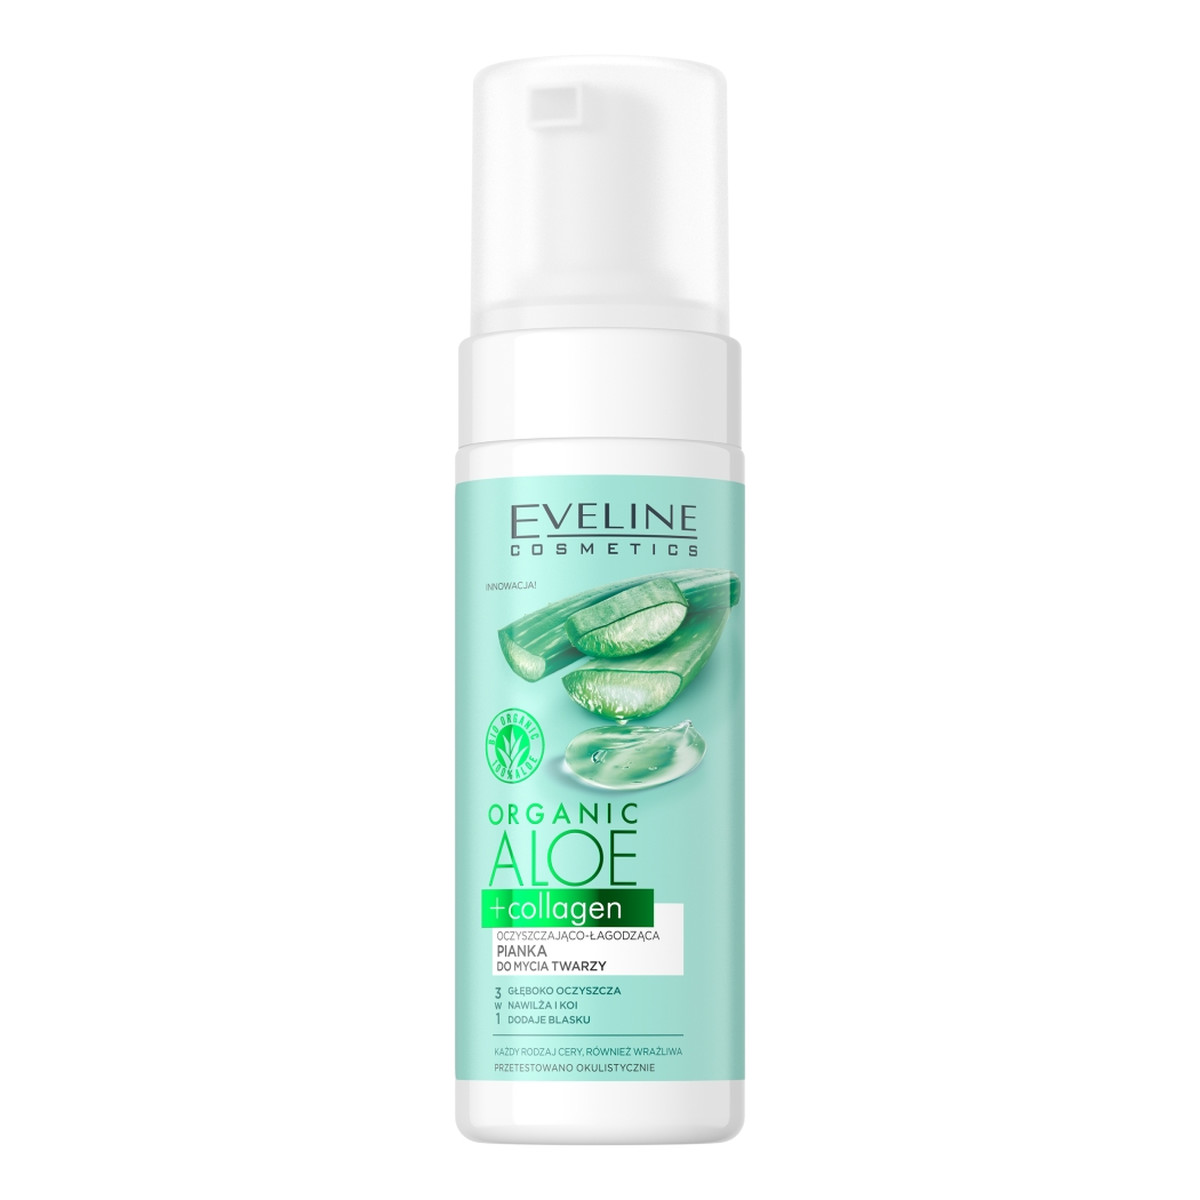 Eveline Organic aloe + collagen oczyszczająco-łagodząca pianka do mycia twarzy 3w1